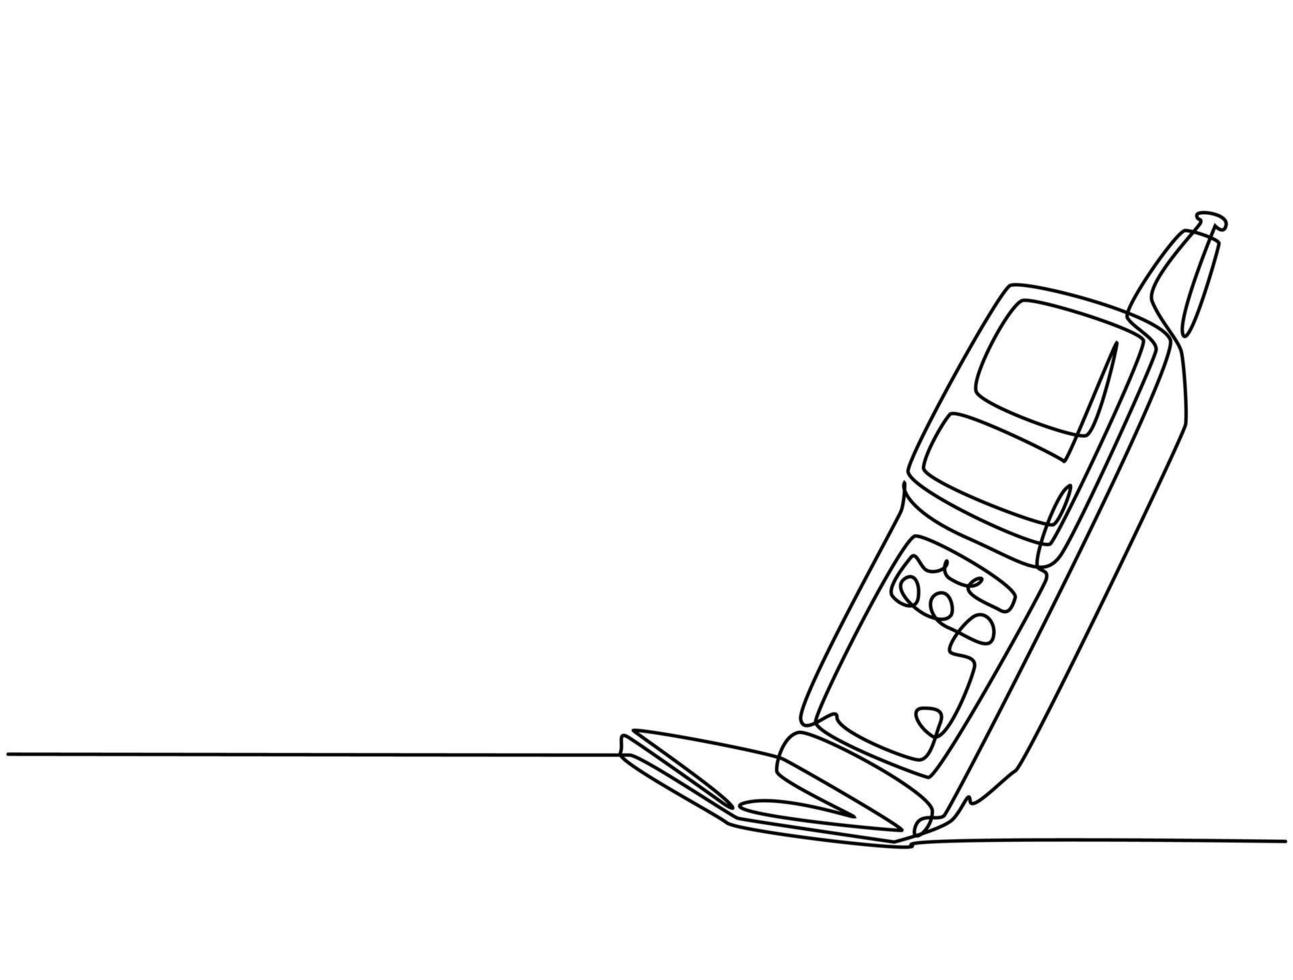 eine einzige Strichzeichnung des alten Retro-Flip-Mobiltelefons. Vintage klassisches Handy zur Kommunikation des Konzepts durchgehende Linie Grafik zeichnen Design-Vektor-Illustration vektor